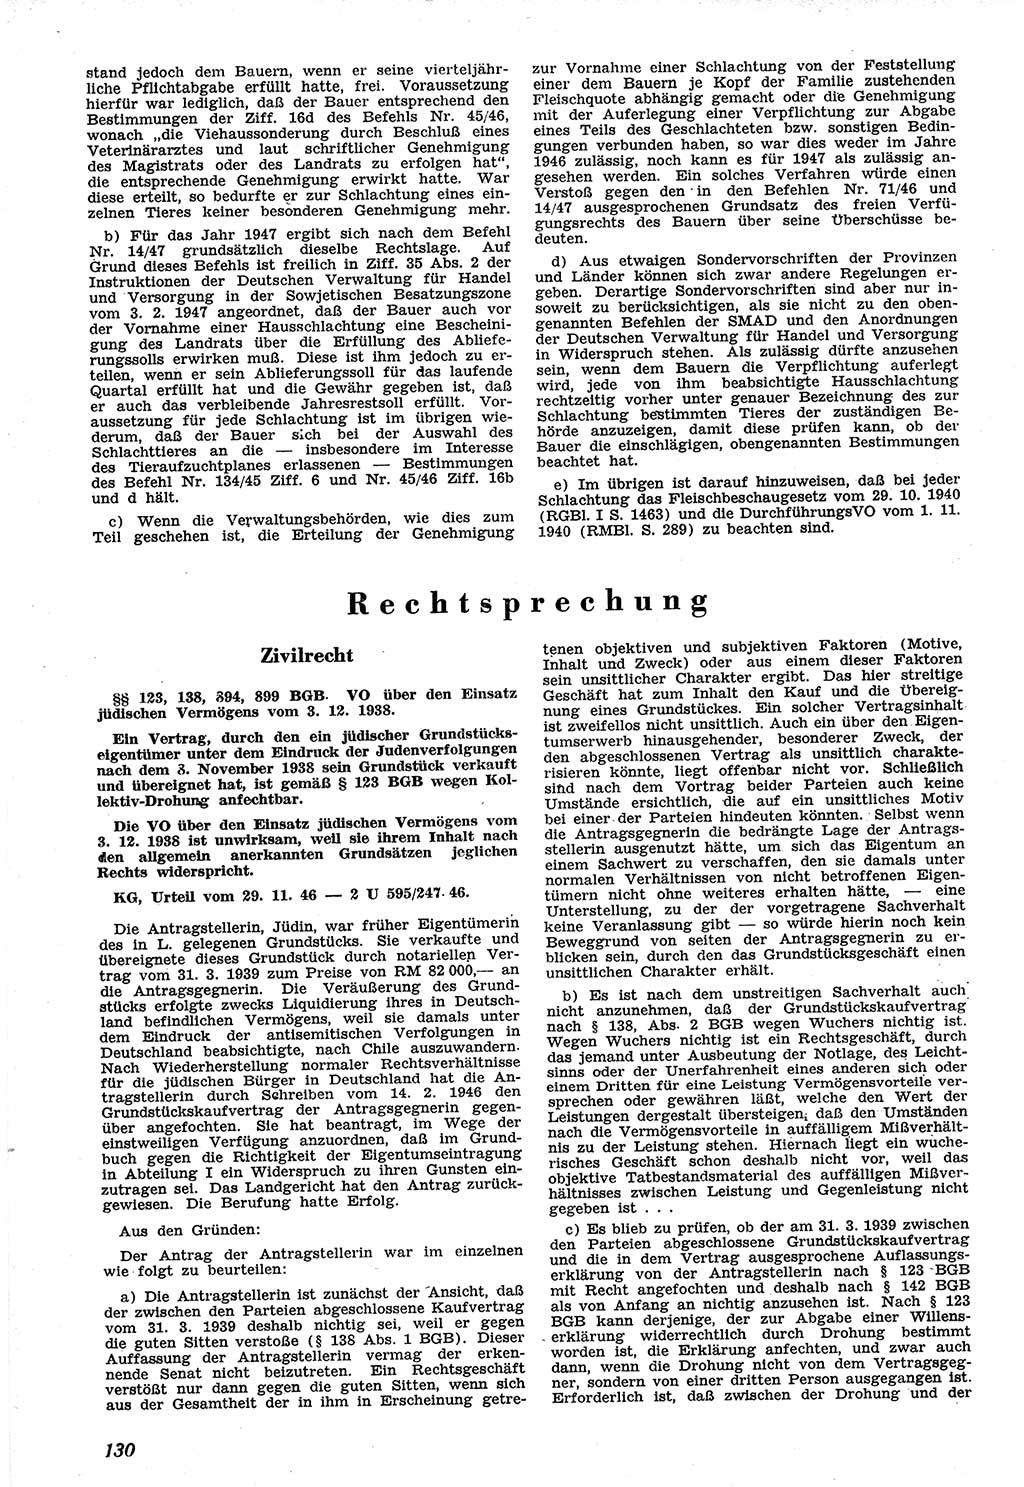 Neue Justiz (NJ), Zeitschrift für Recht und Rechtswissenschaft [Sowjetische Besatzungszone (SBZ) Deutschland], 1. Jahrgang 1947, Seite 130 (NJ SBZ Dtl. 1947, S. 130)